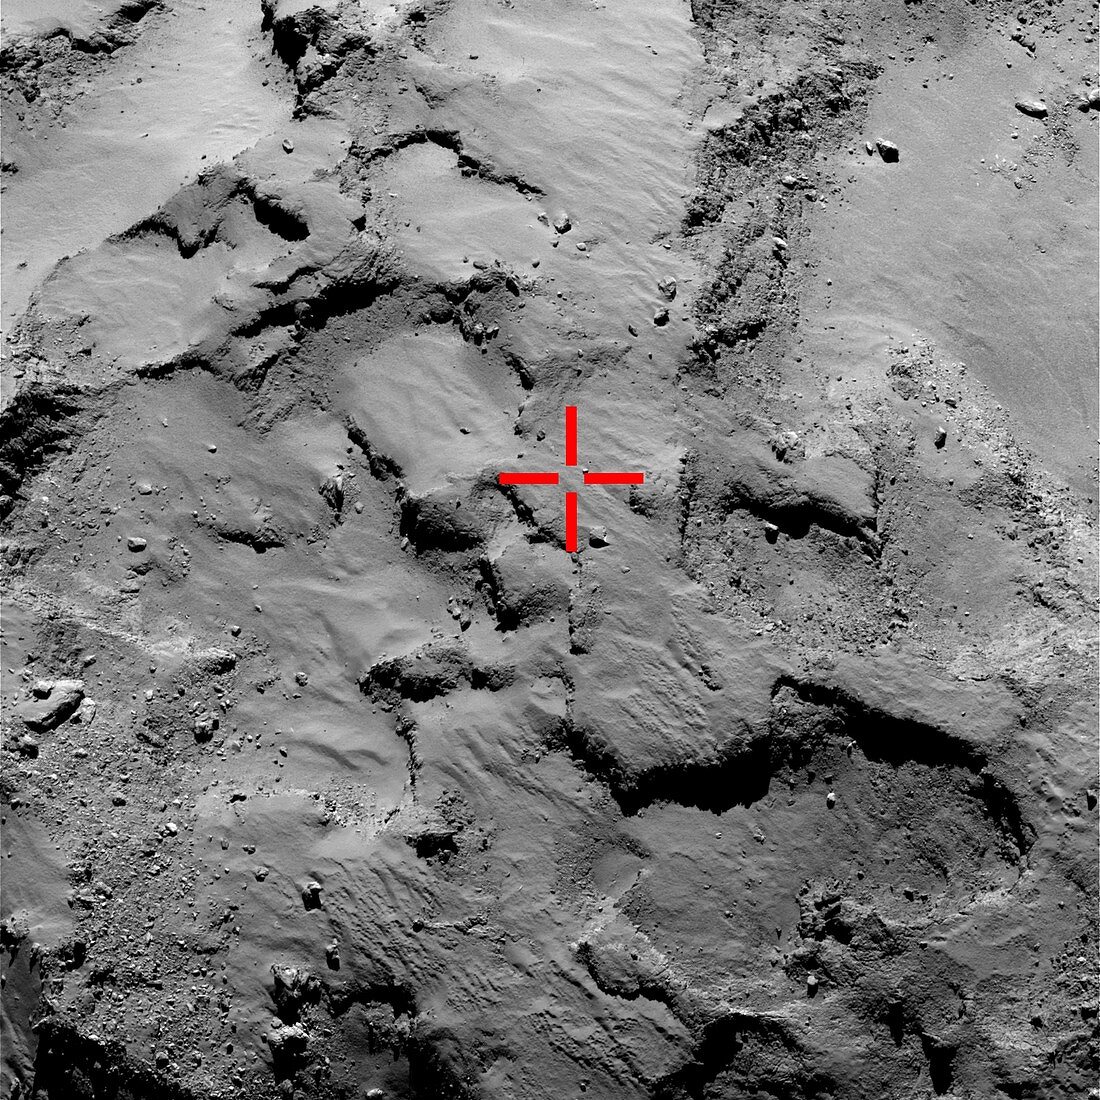 Philae probe landing site